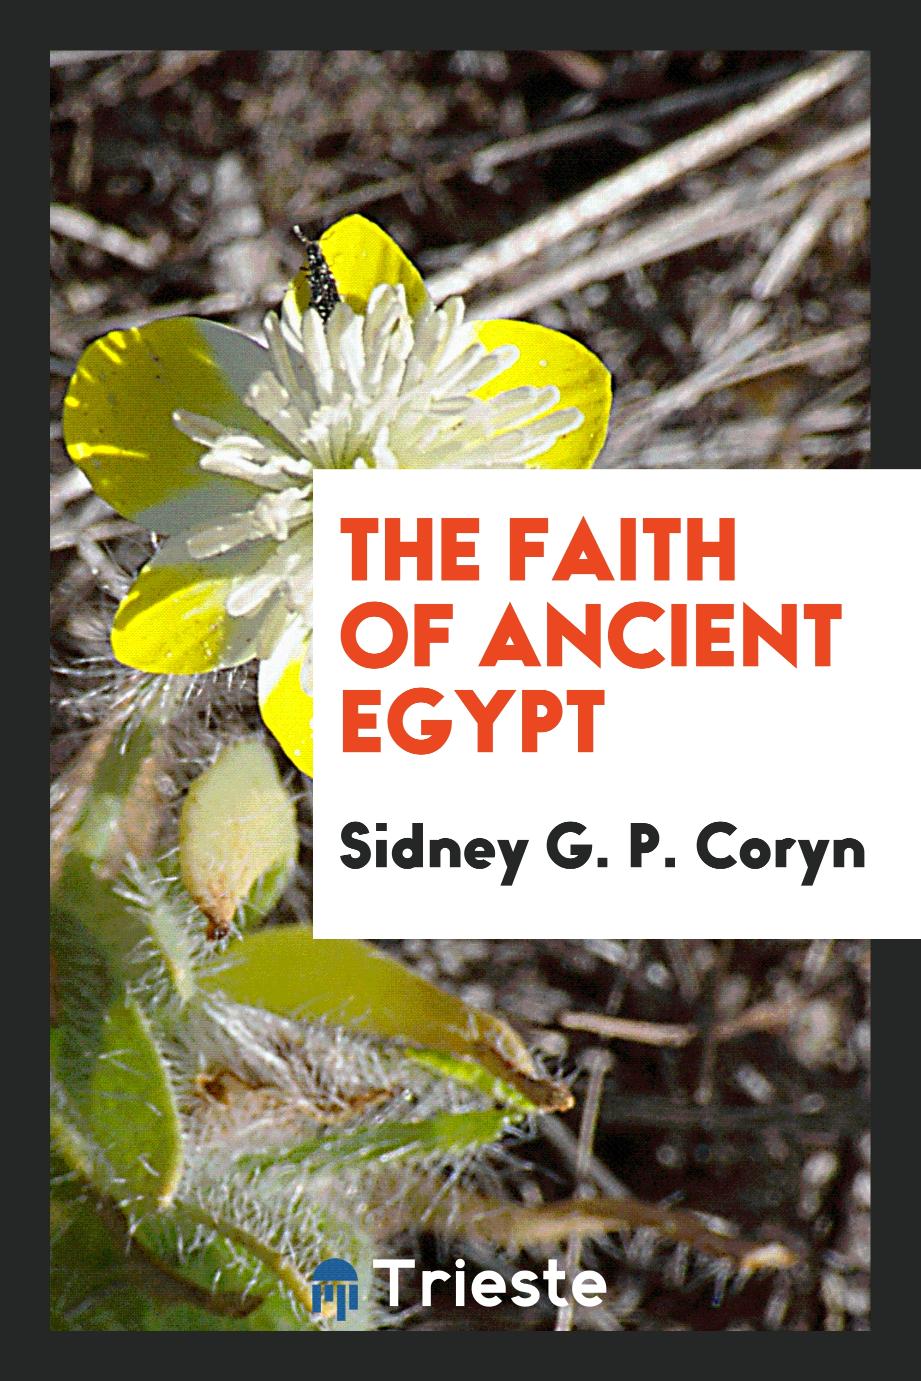 The faith of ancient Egypt